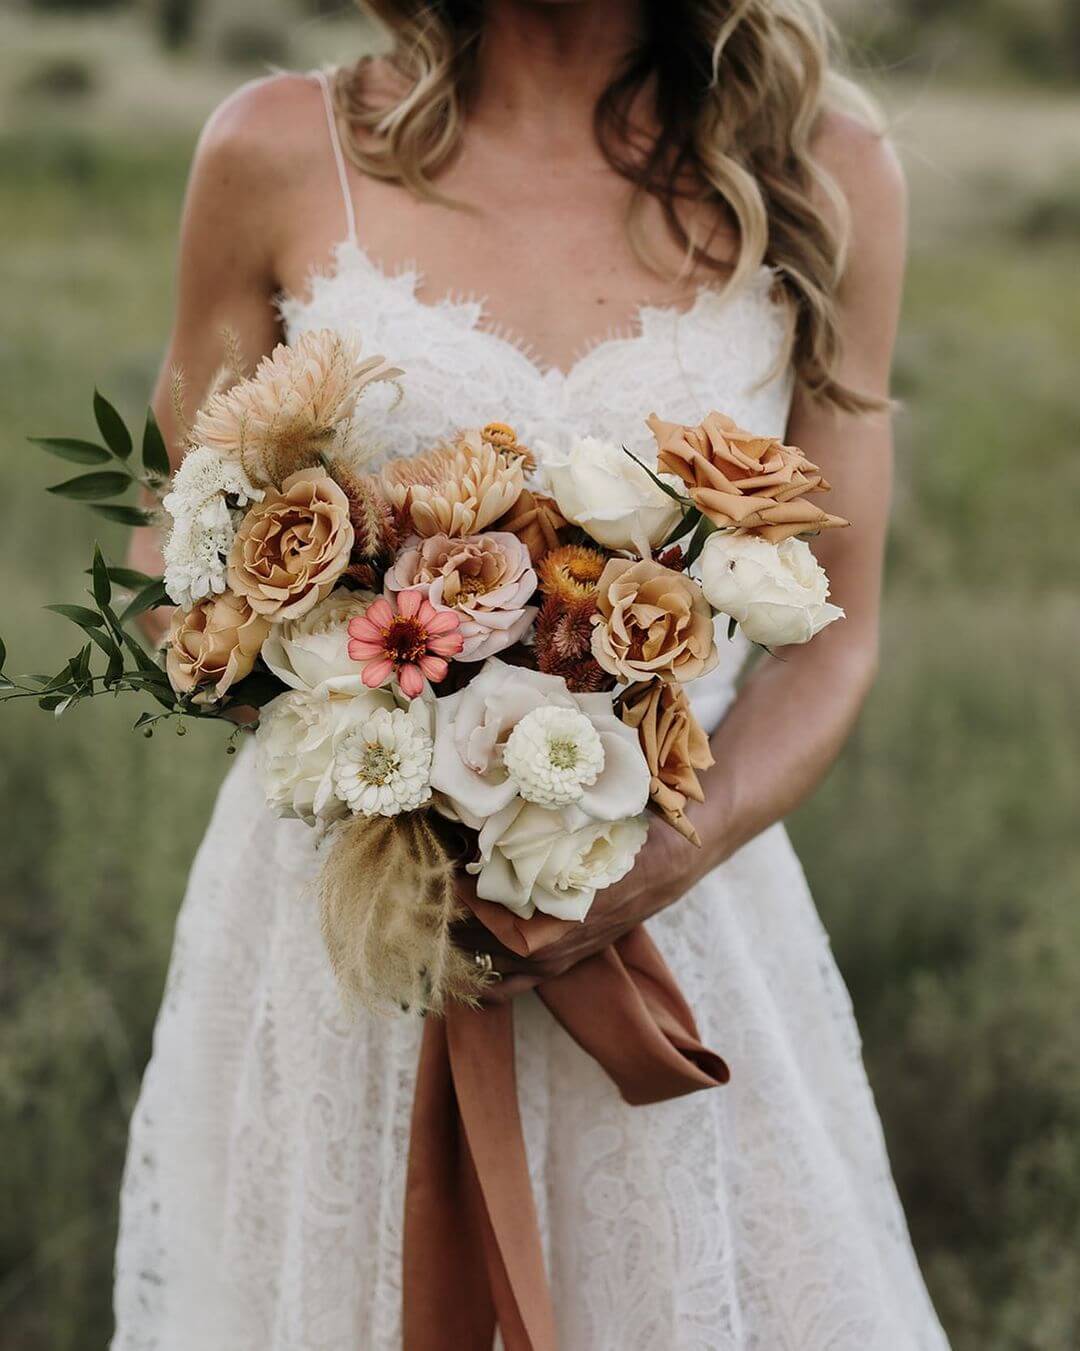 Western Wedding Bouquet Designs A Boho Style Wedding Bouquet